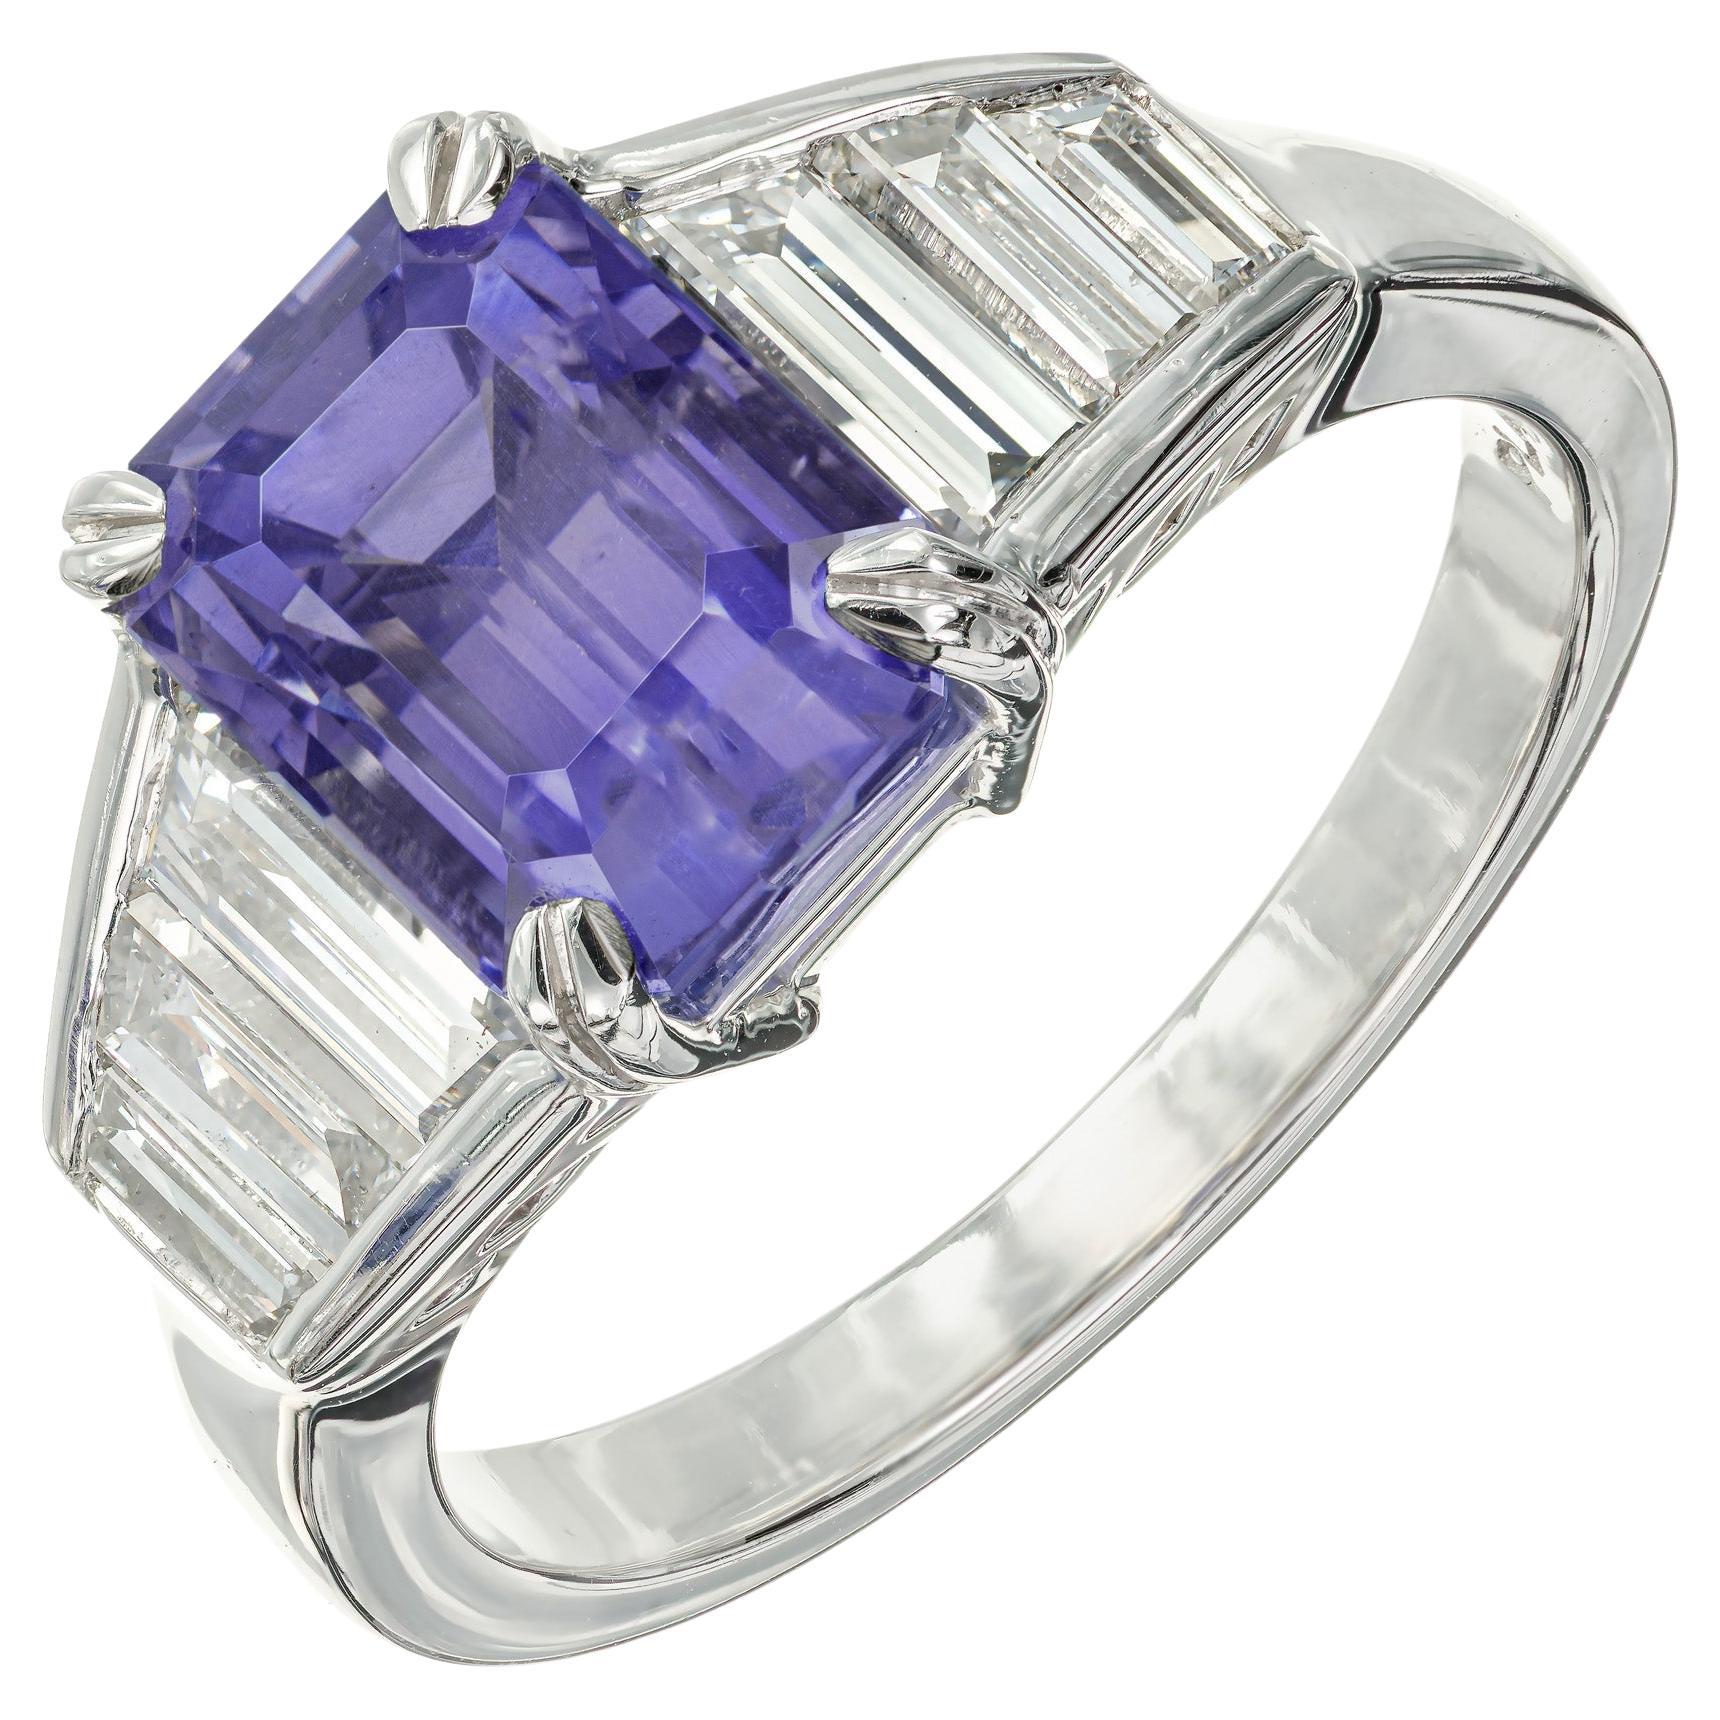 Platin-Verlobungsring mit GIA-zertifiziertem 3,67 Karat violett blauem Saphir und Diamant